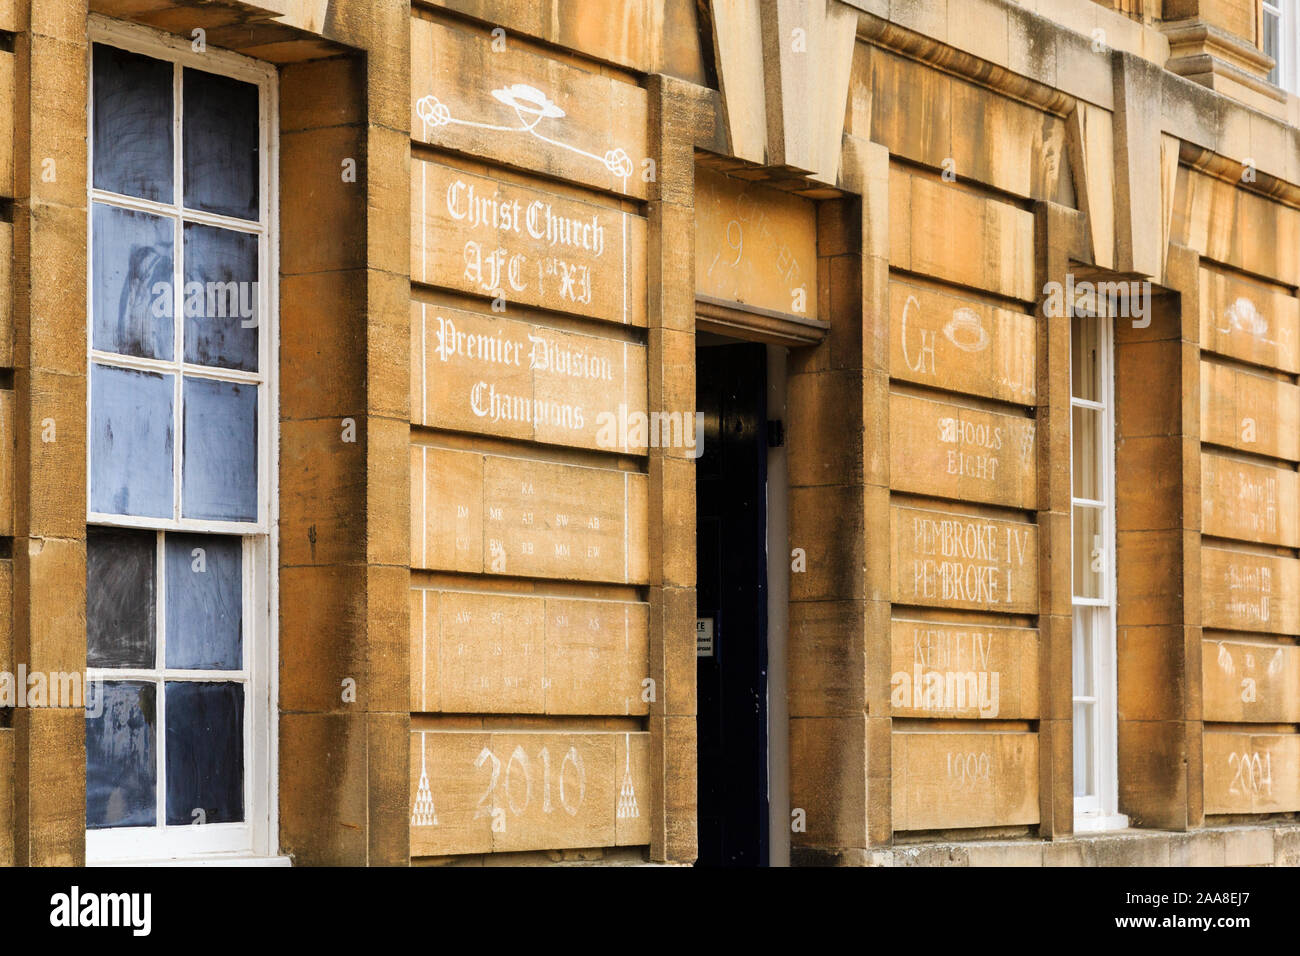 Réalisations d'Aviron écrit sur mur dans le Christ Church College, Oxford, Oxfordshire, Angleterre, Royaume-Uni, Angleterre Banque D'Images